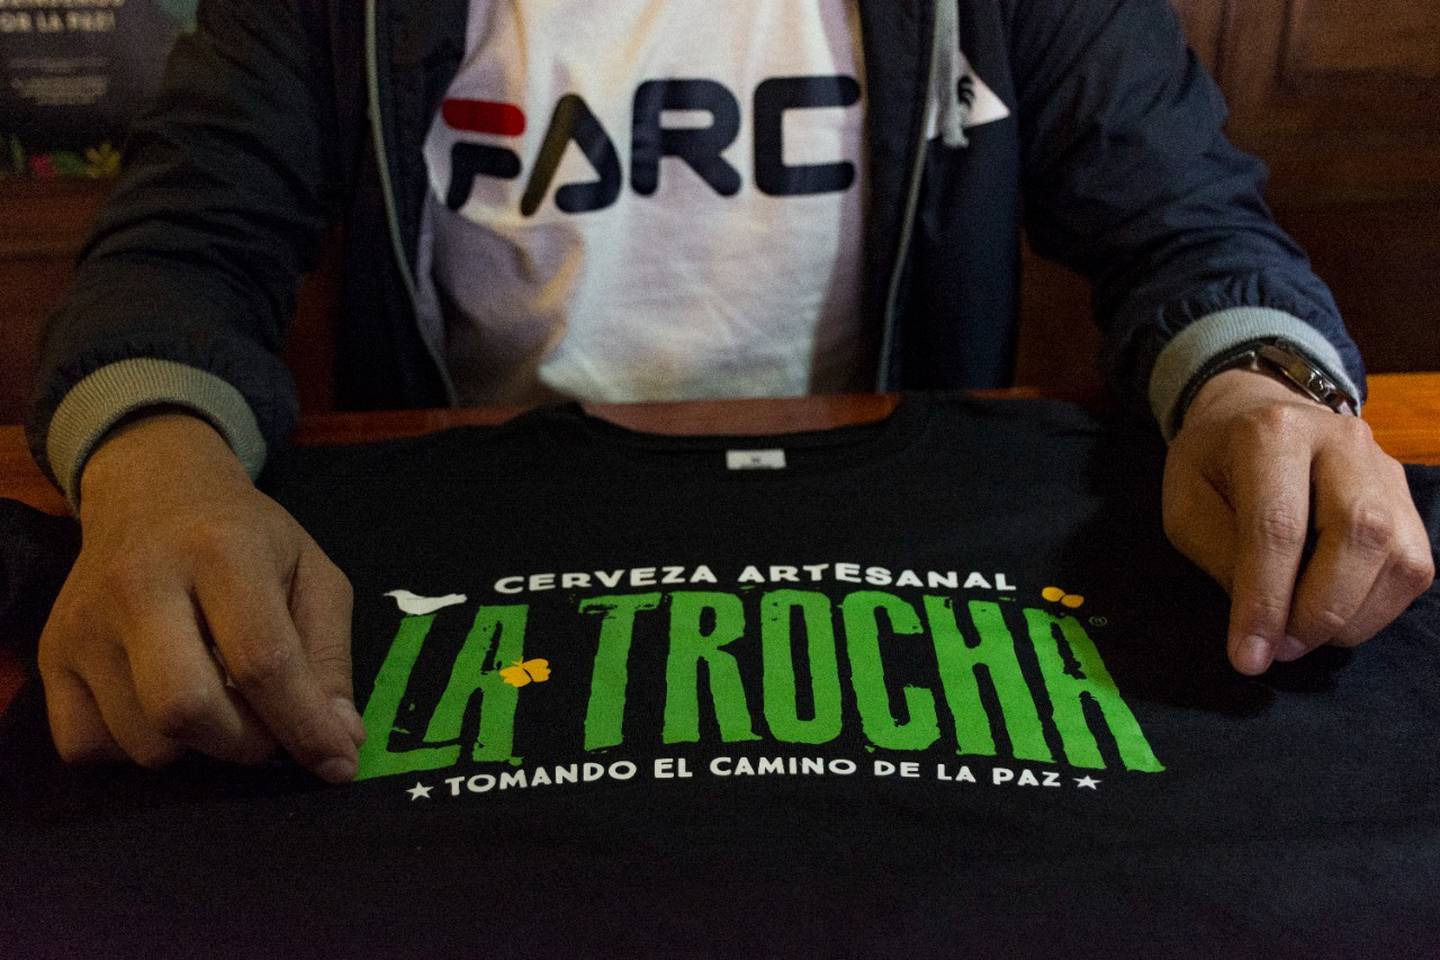 Una camiseta de la marca de cerveza La Trocha sobre una mesa de un bar en Colombia.dfd